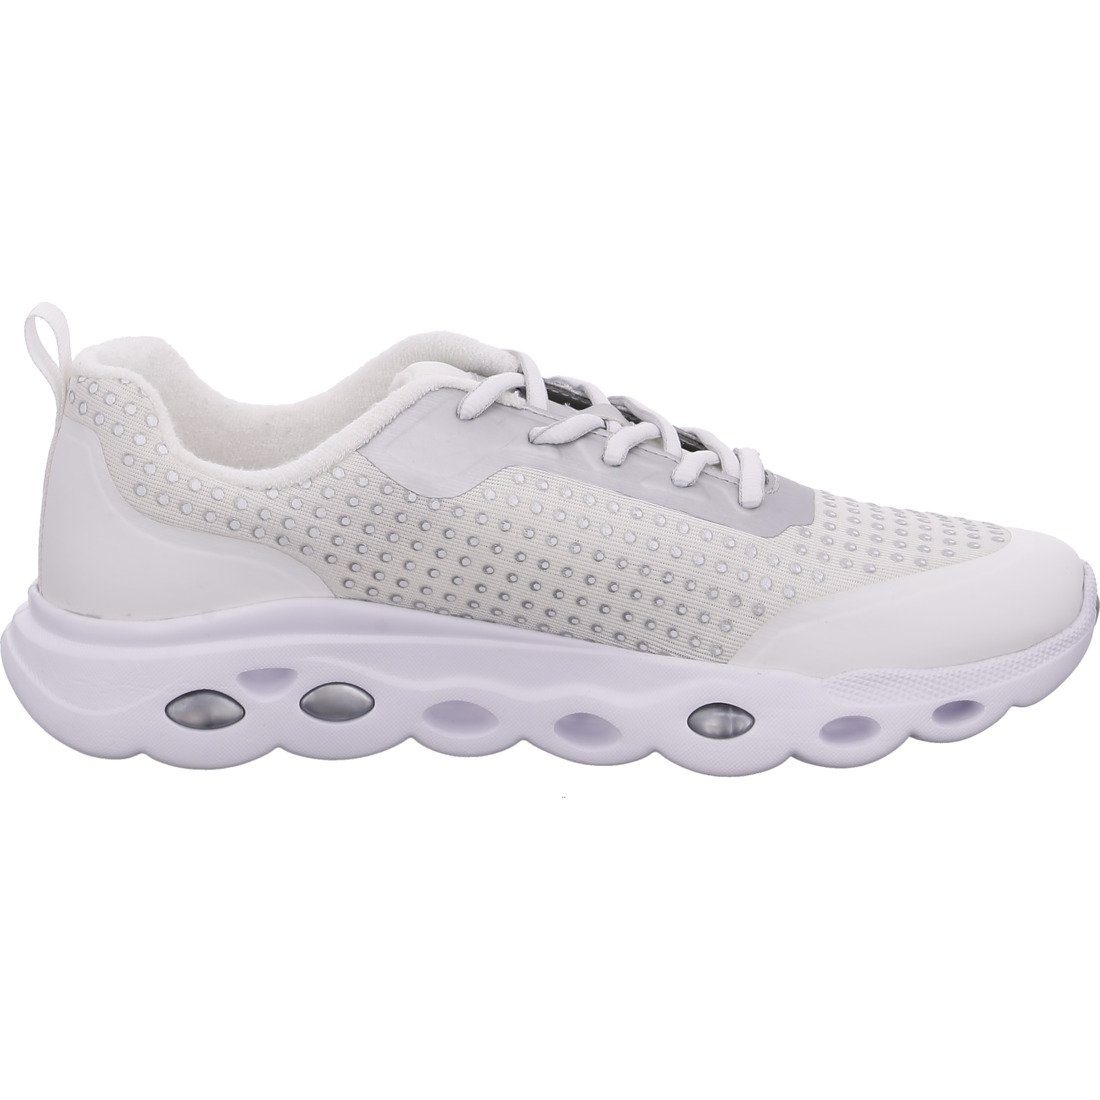 Ara Ara 043346 - Schuhe, Racer Damen Sneaker Sneaker Materialmix blau